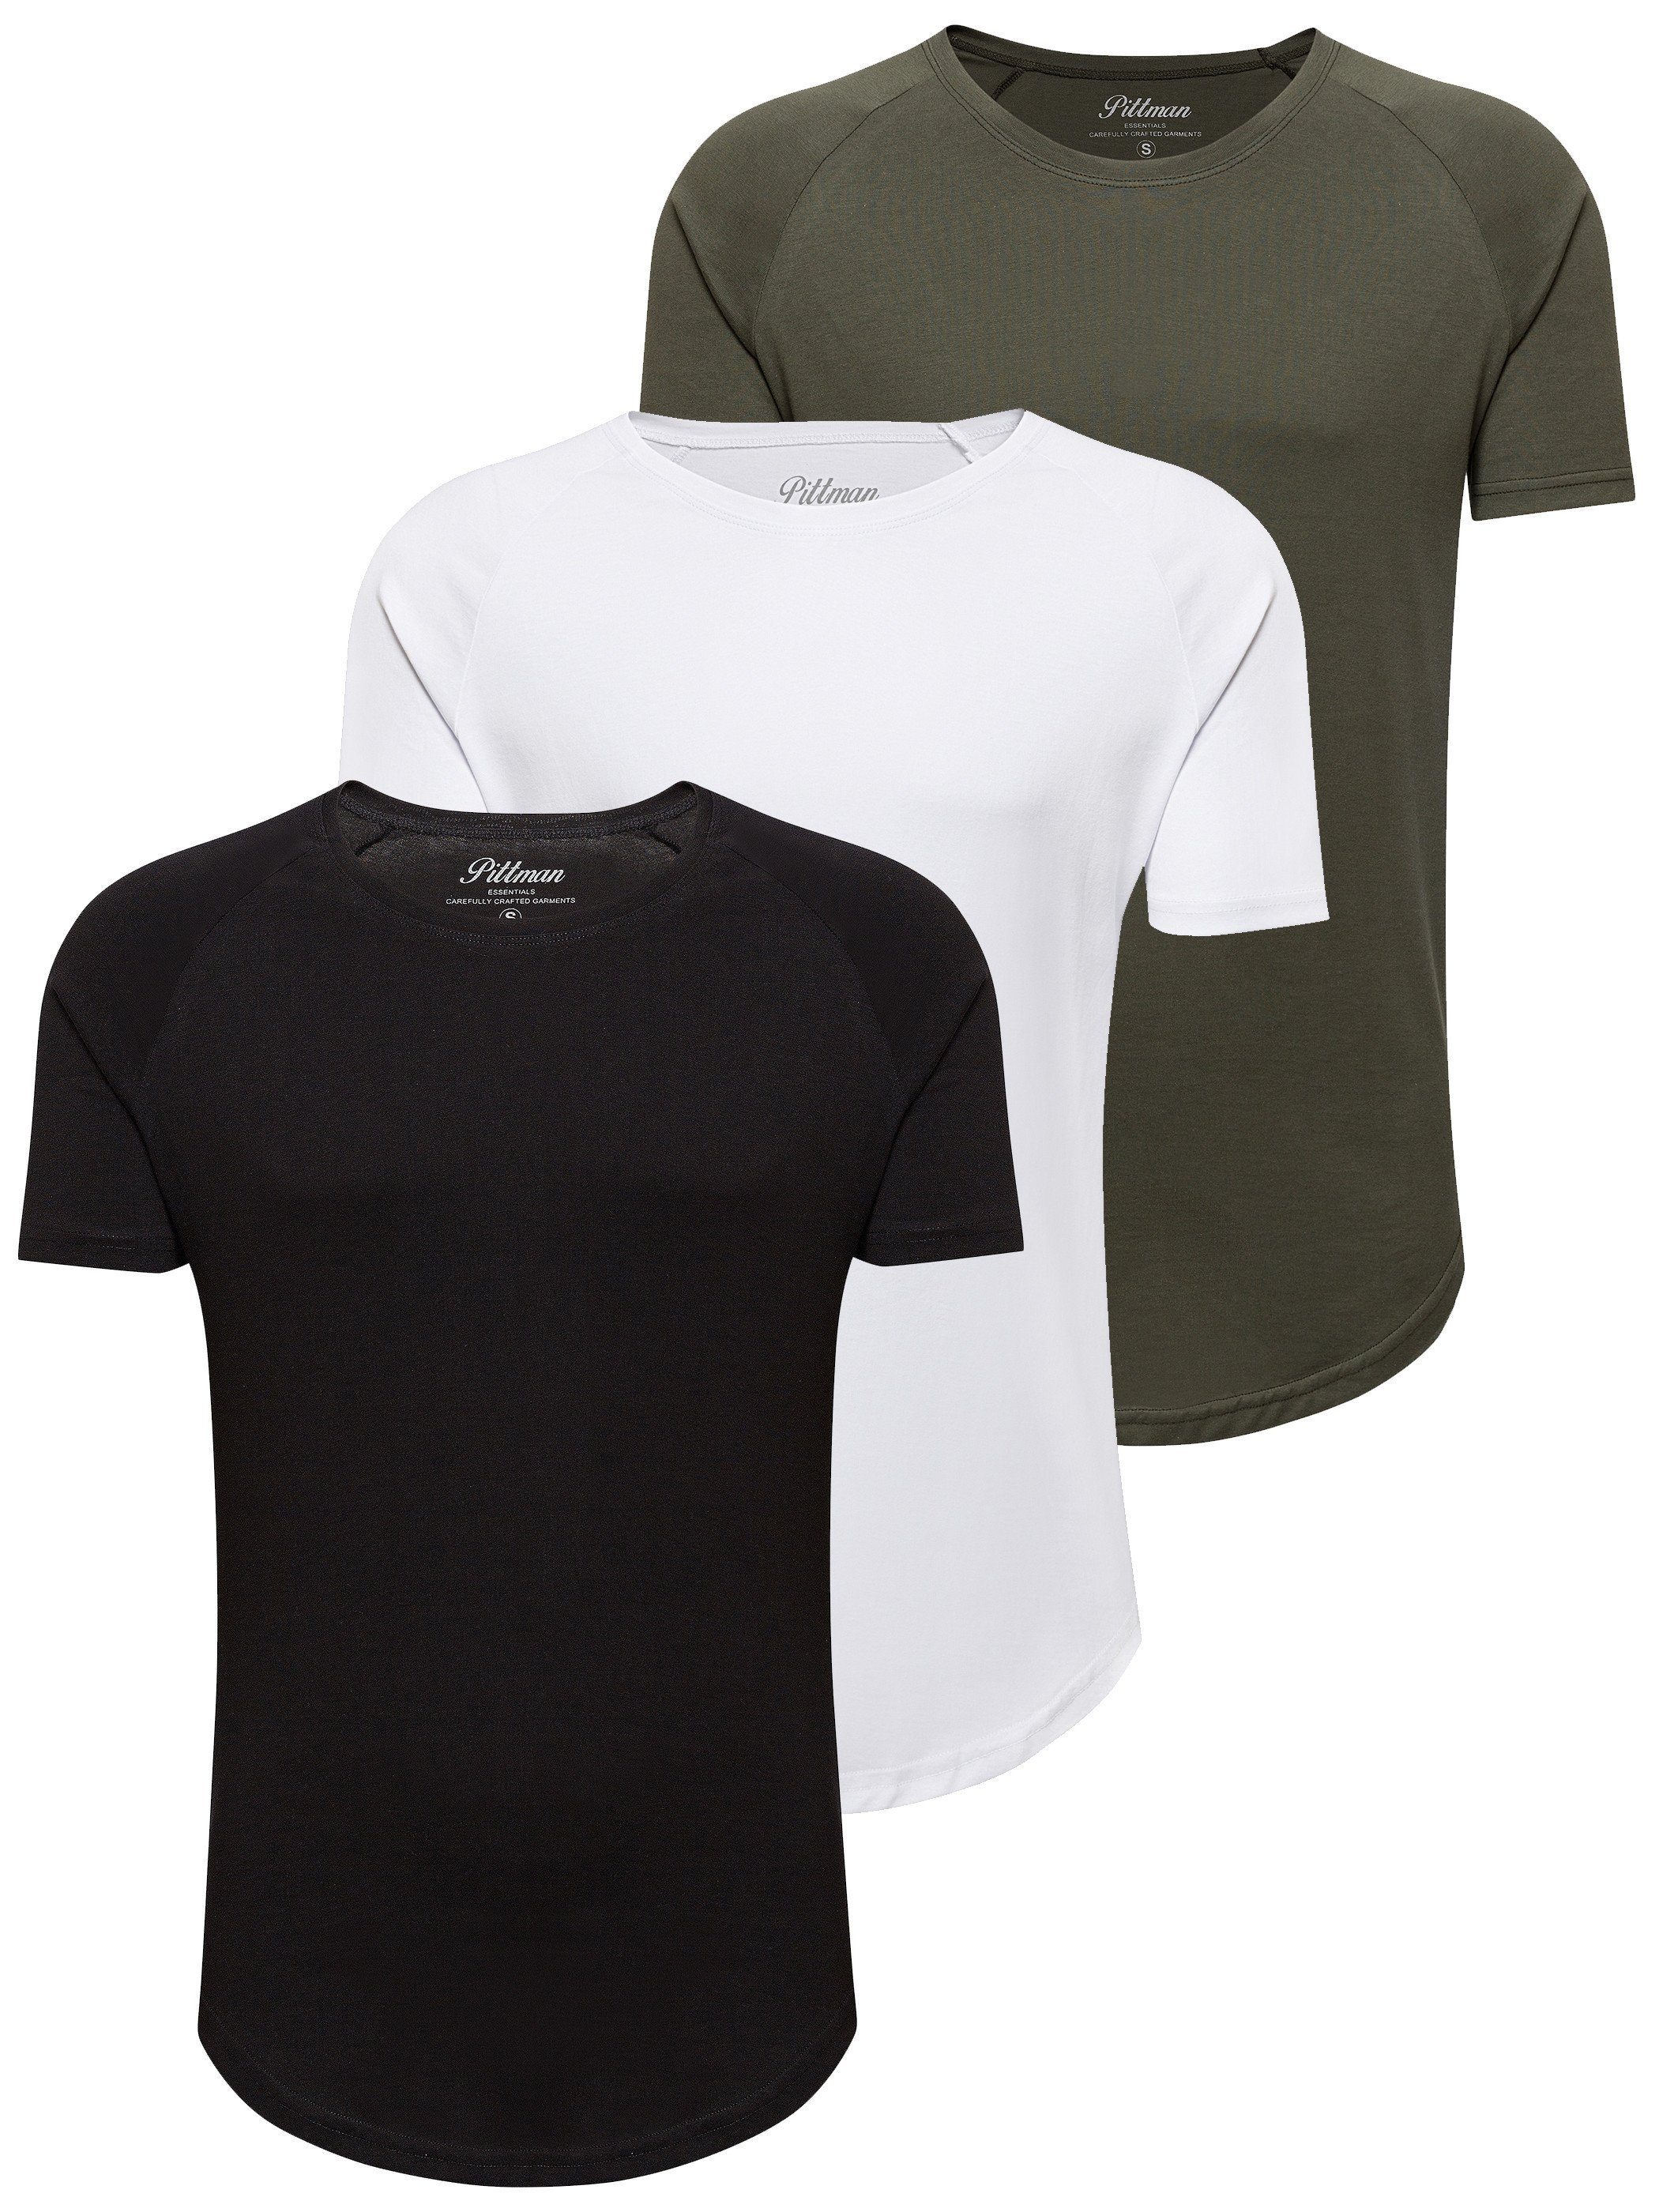 Pittman T-Shirt 3-Pack Herren T-Shirt Finn (Set, 3er-Pack) Oversize Rundhals T-Shirt schwarz-weiß-grün (Mix1) | T-Shirts